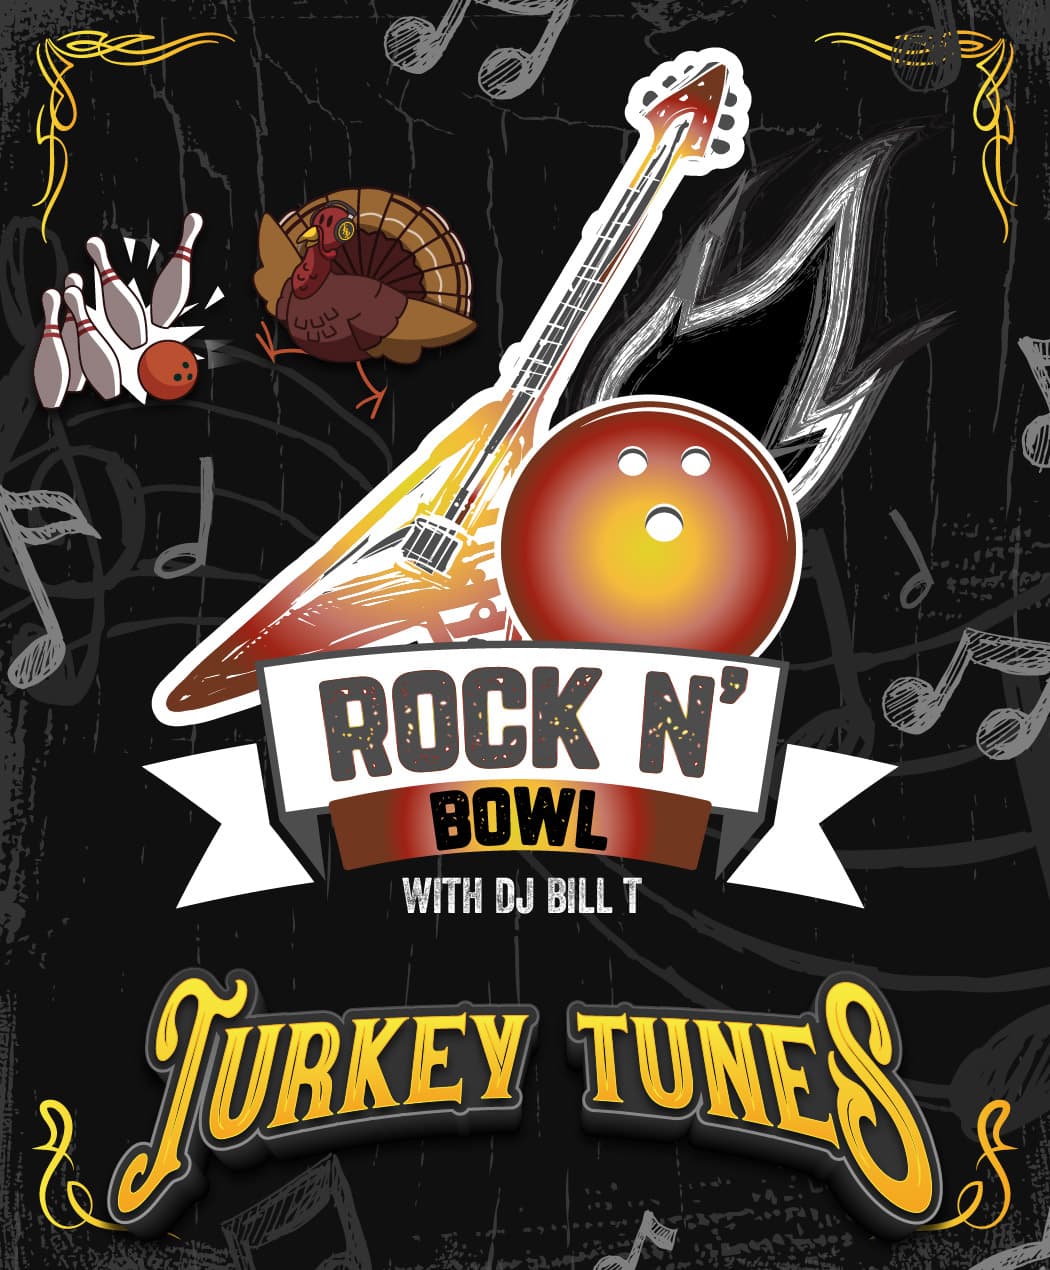 Rock N Bowl Turkey Tunes